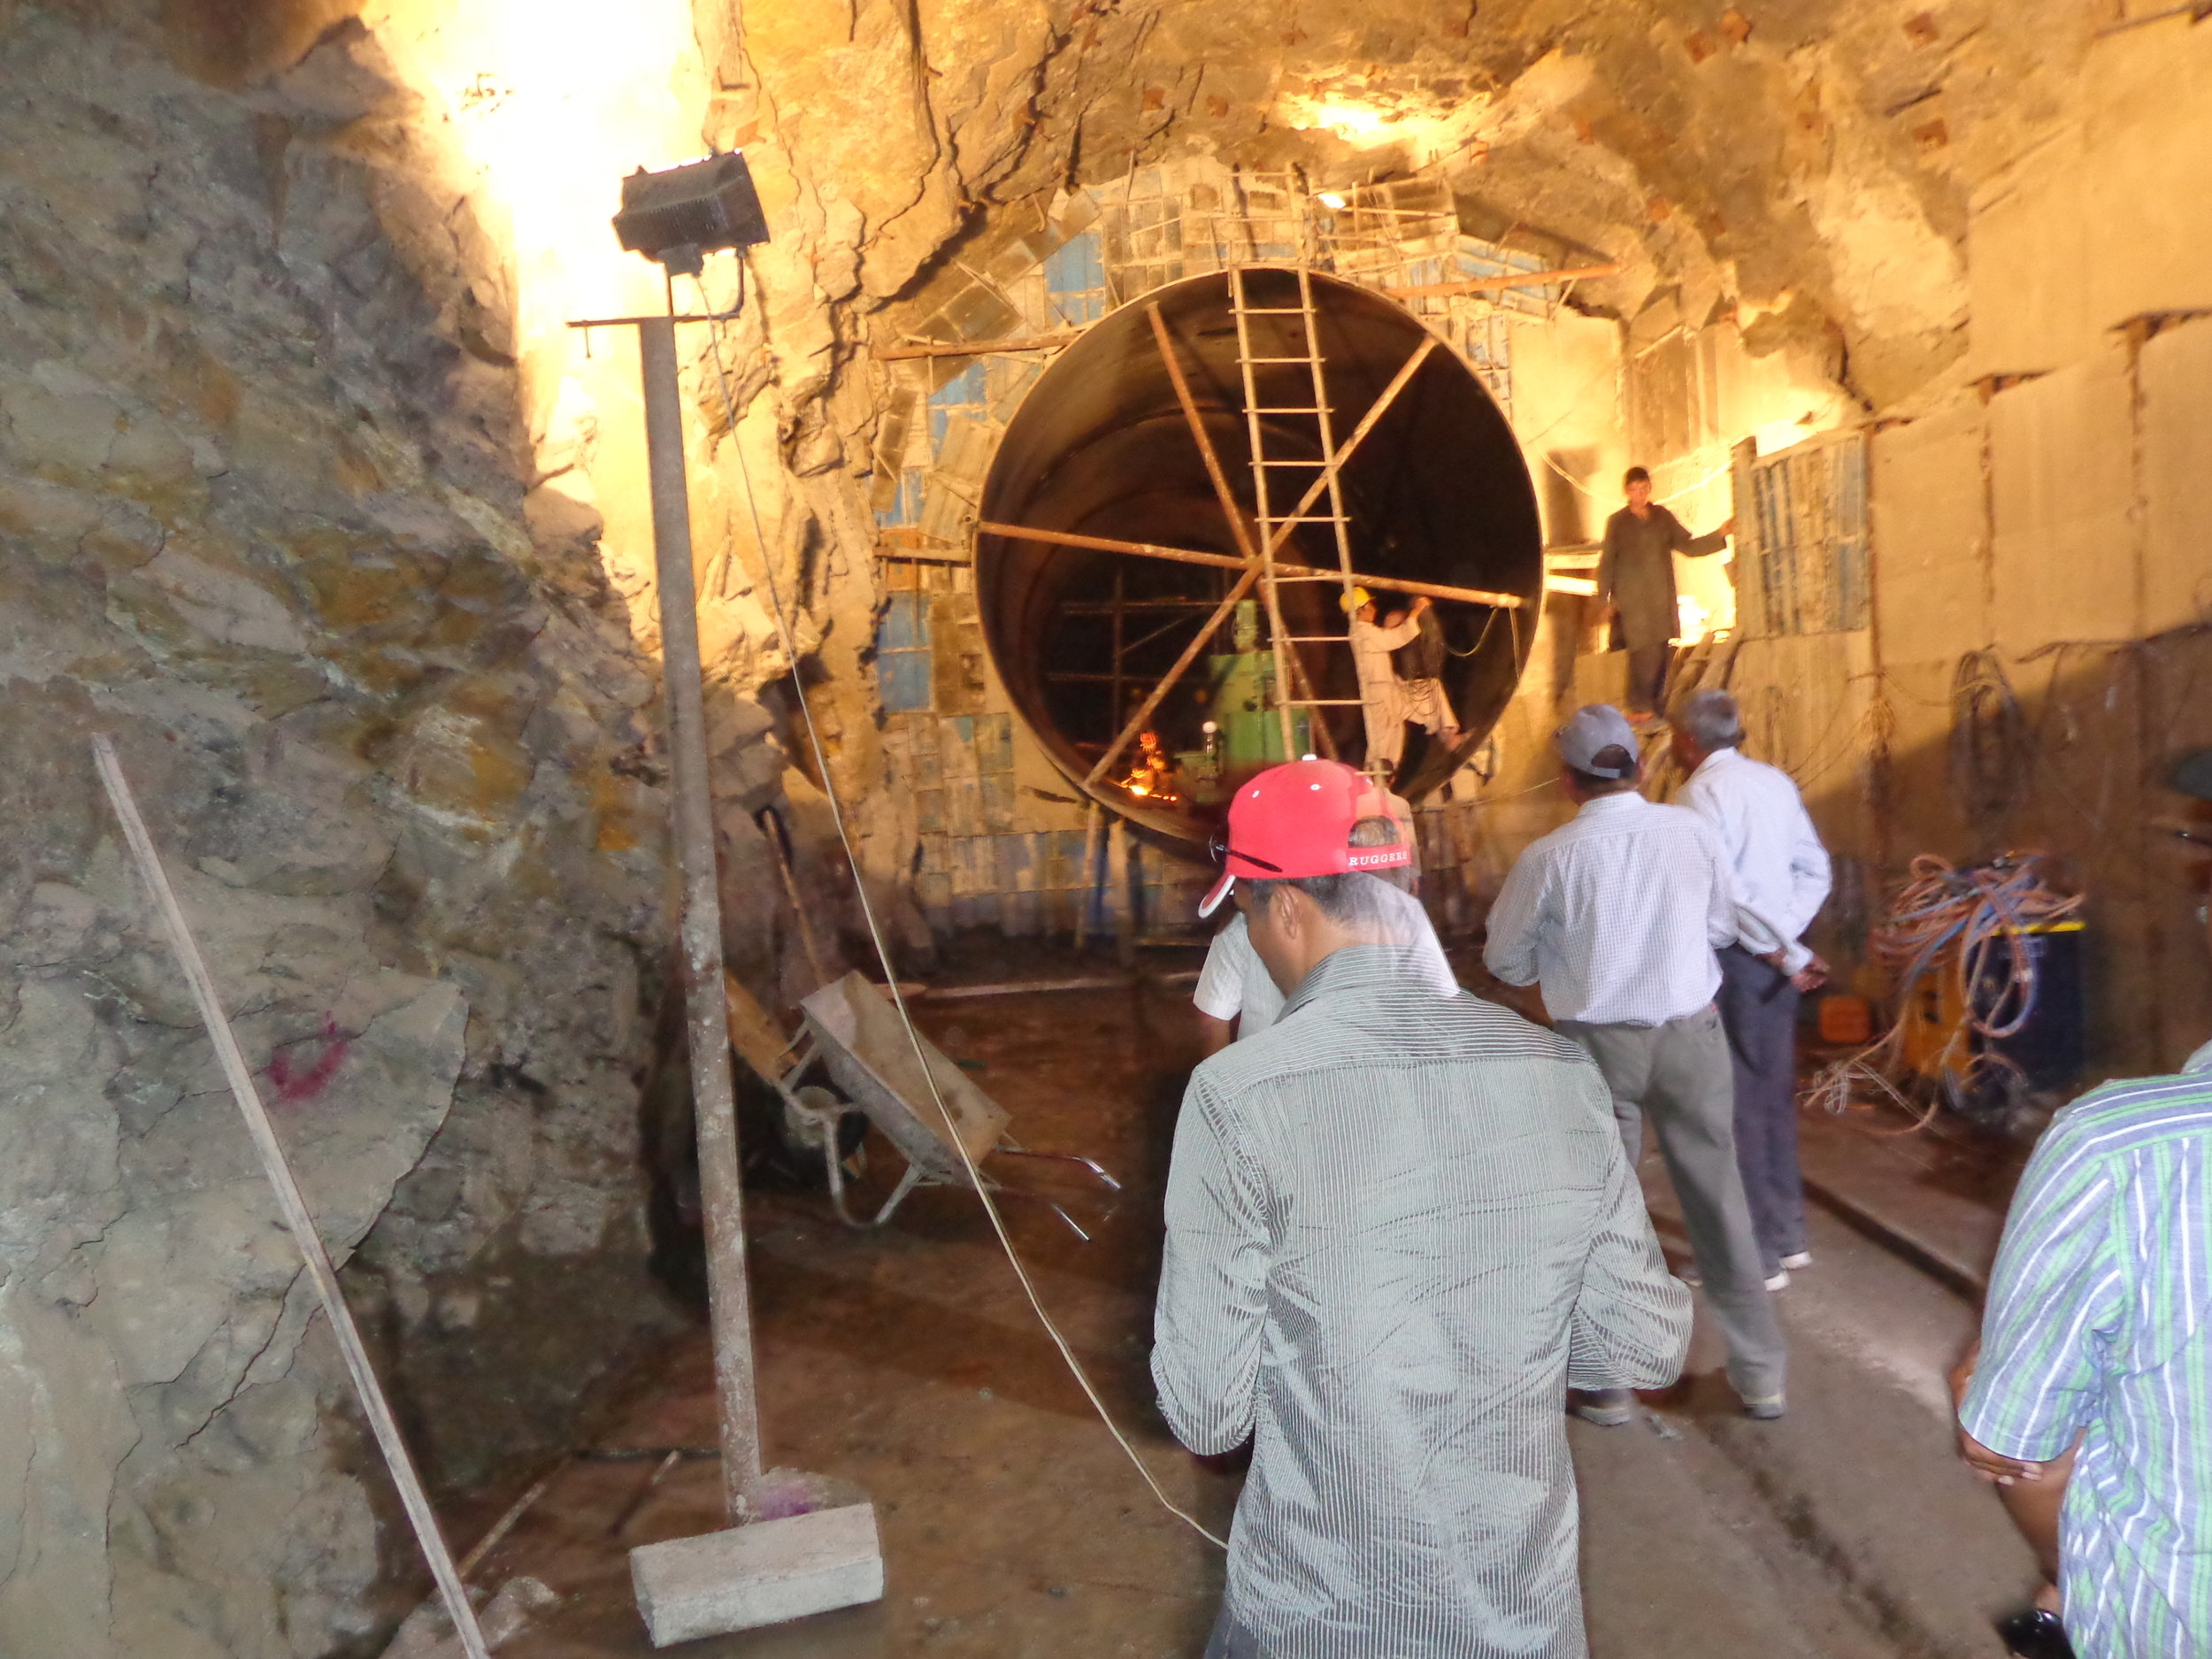 Inside the penstock tunnels